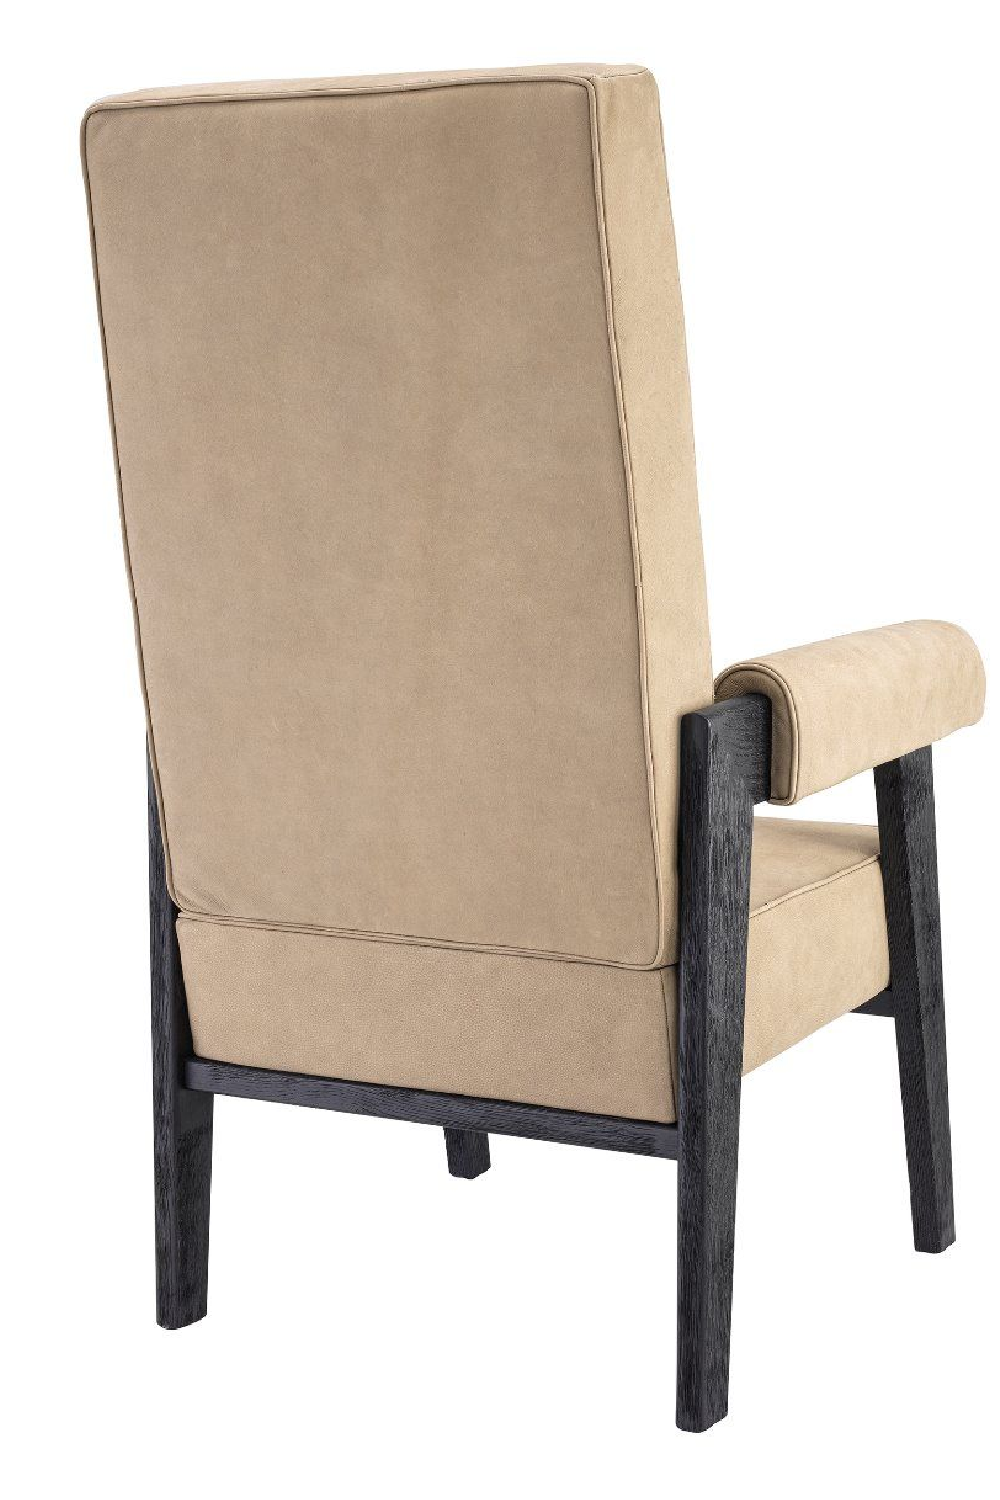 Beige High-Back Chair | Eichholtz Milo | Oroa.com